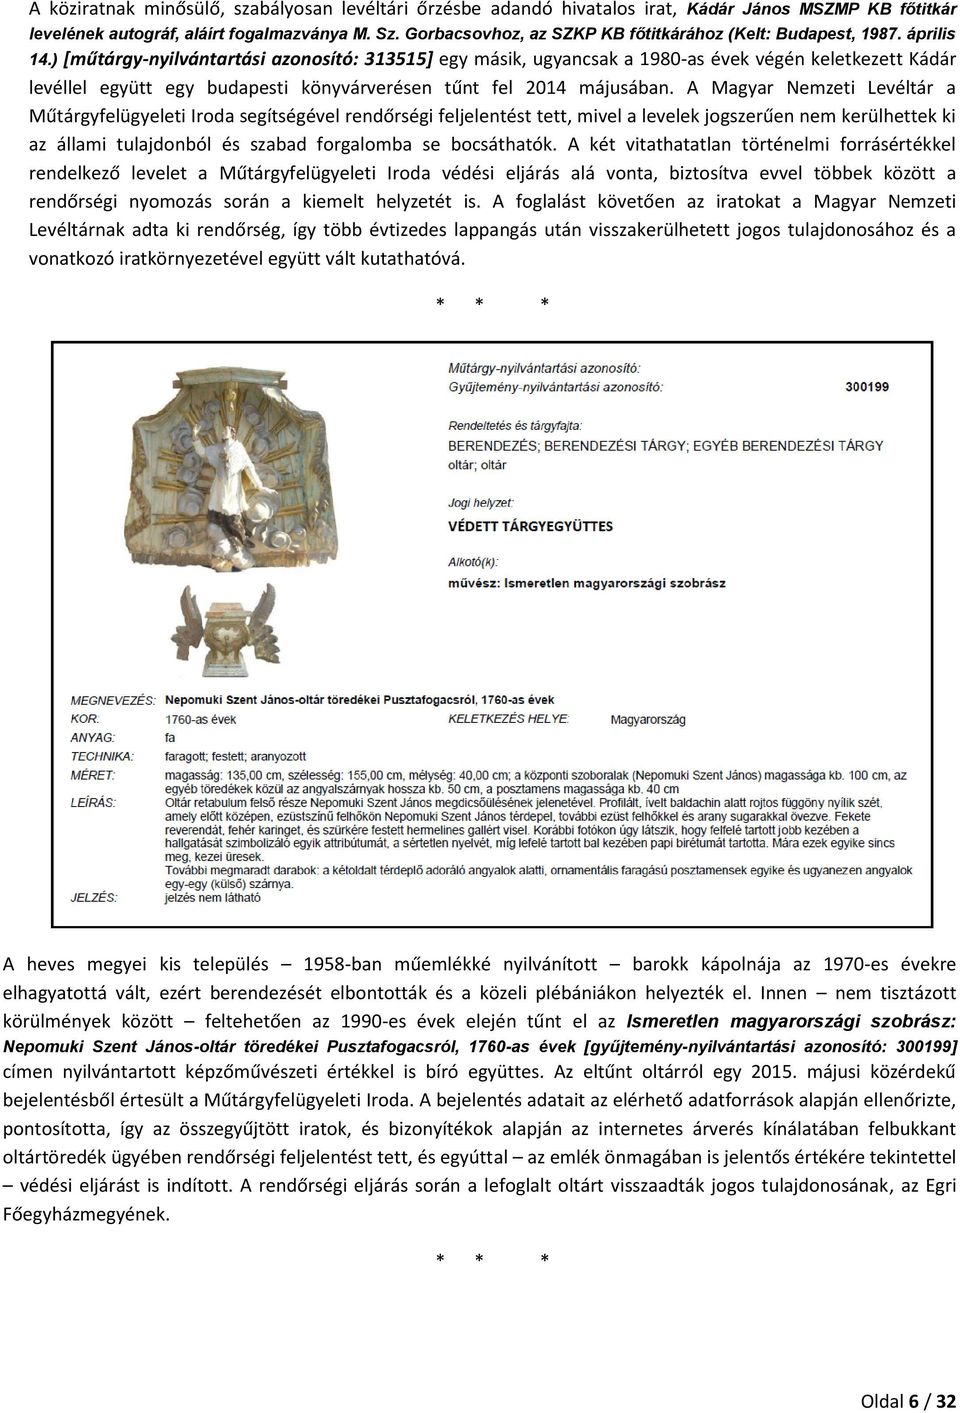 ) [műtárgy-nyilvántartási azonosító: 313515] egy másik, ugyancsak a 1980-as évek végén keletkezett Kádár levéllel együtt egy budapesti könyvárverésen tűnt fel 2014 májusában.